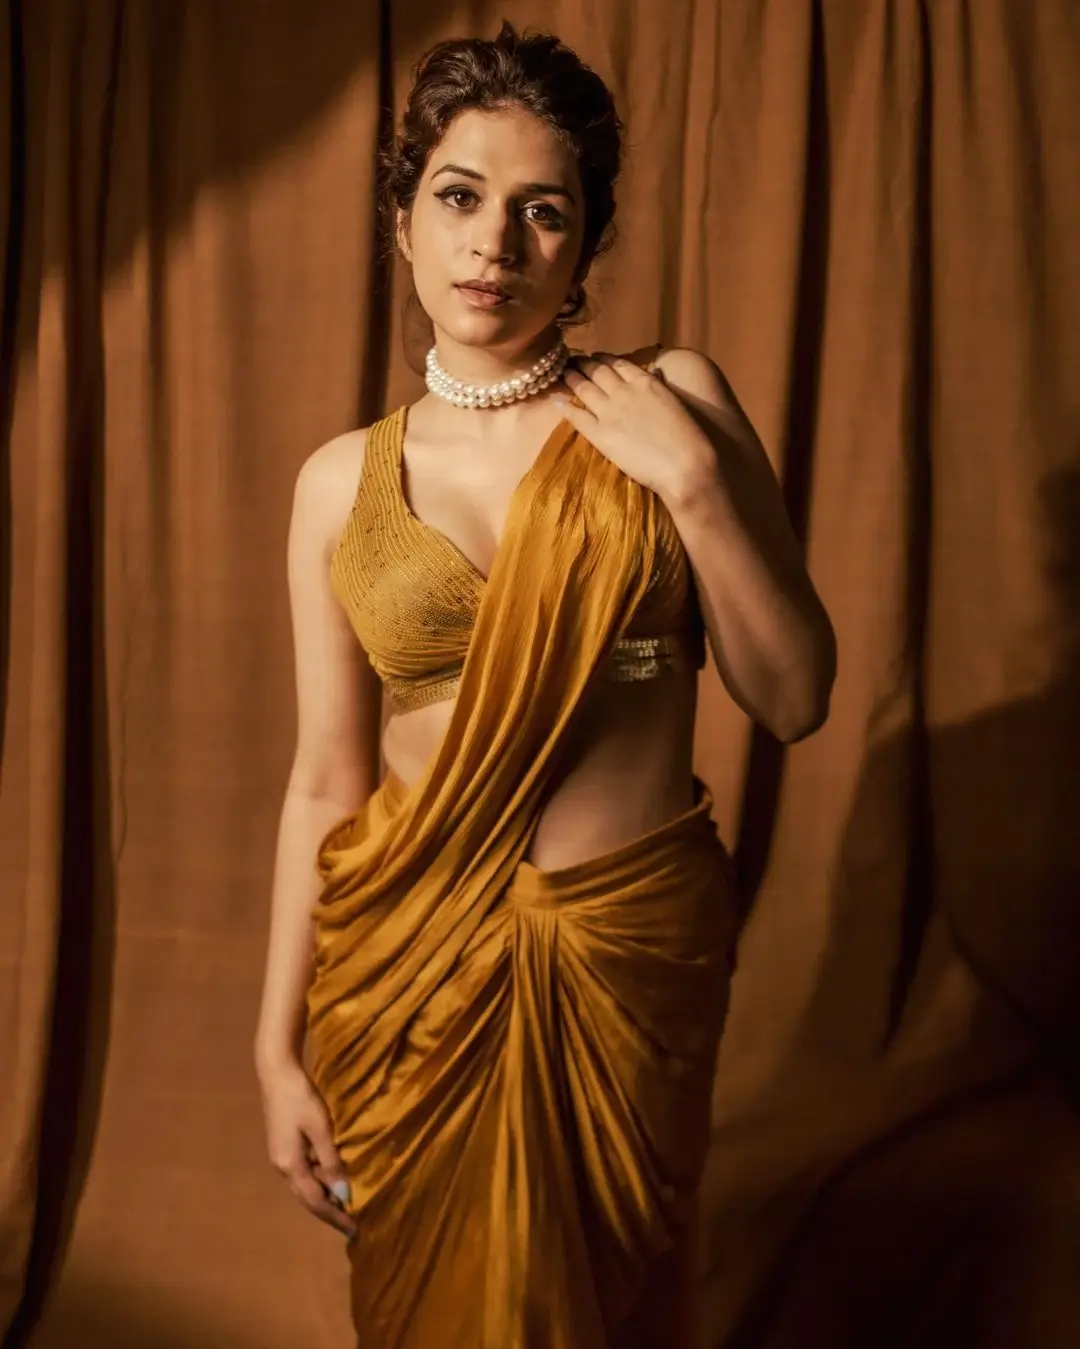 BEAUTIFUL INDIAN ACTRESS SHRADDHA DAS IN YELLOW SAREE 9